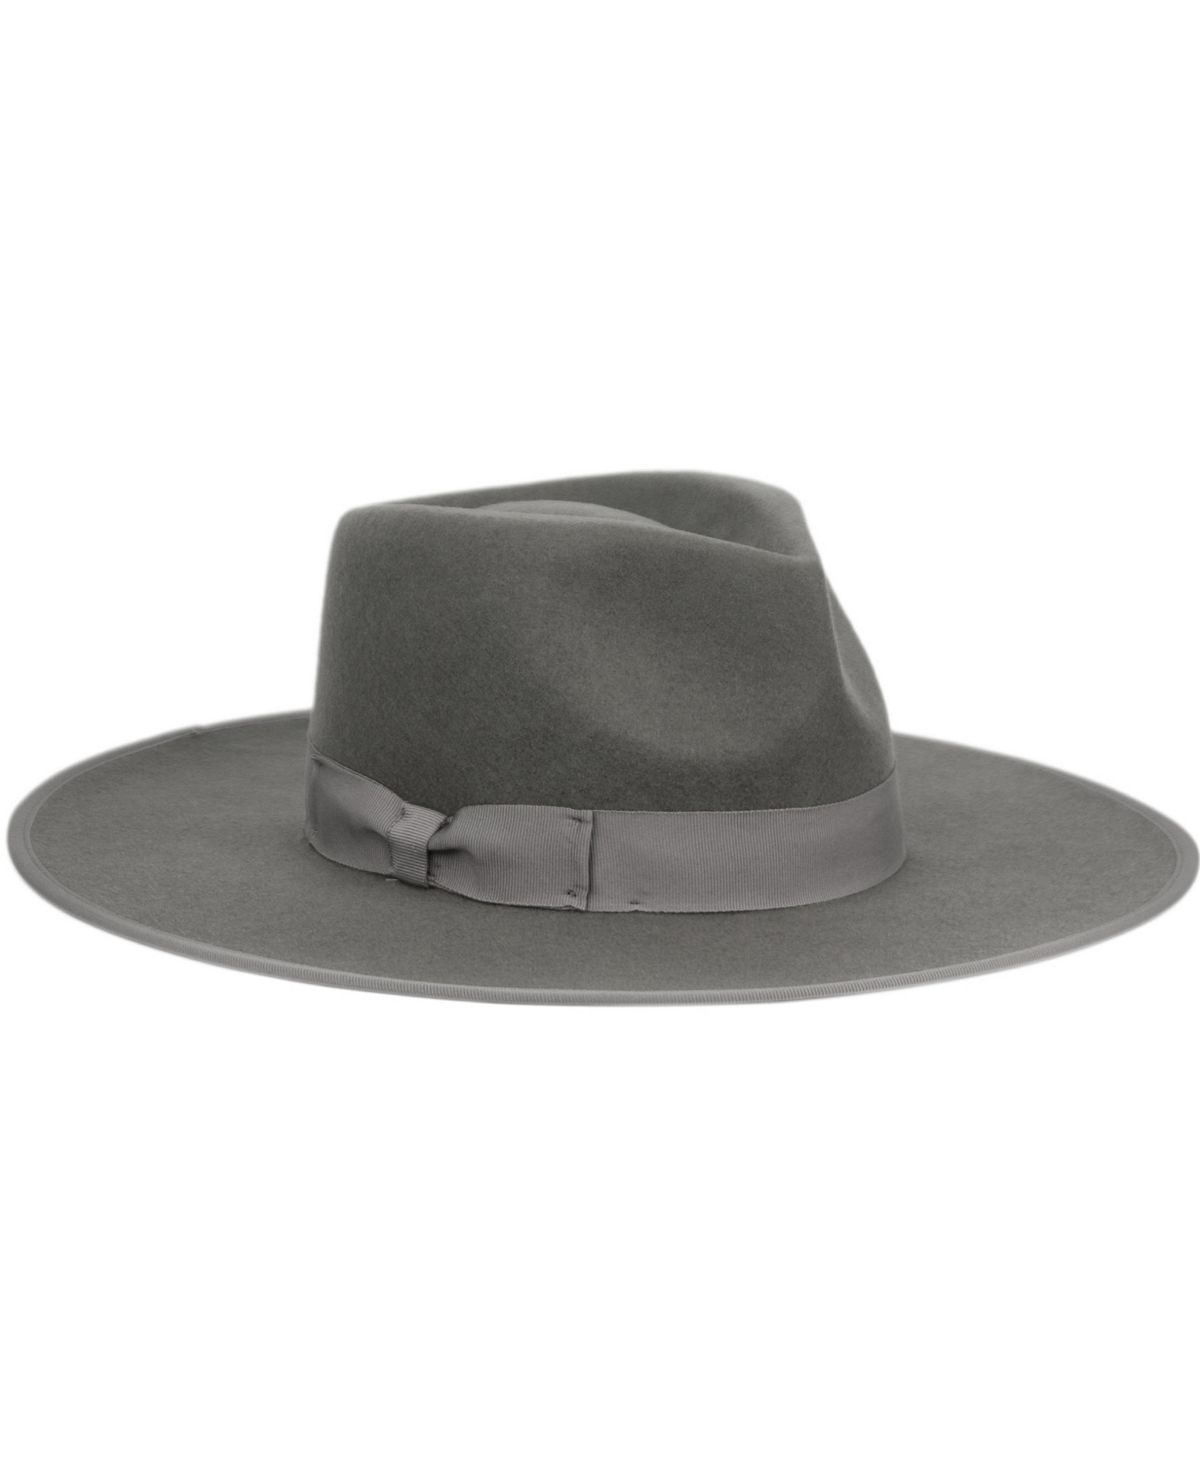 Женская фетровая шляпа Rancher Fedora с широкими полями Angela & William, серый цена и фото